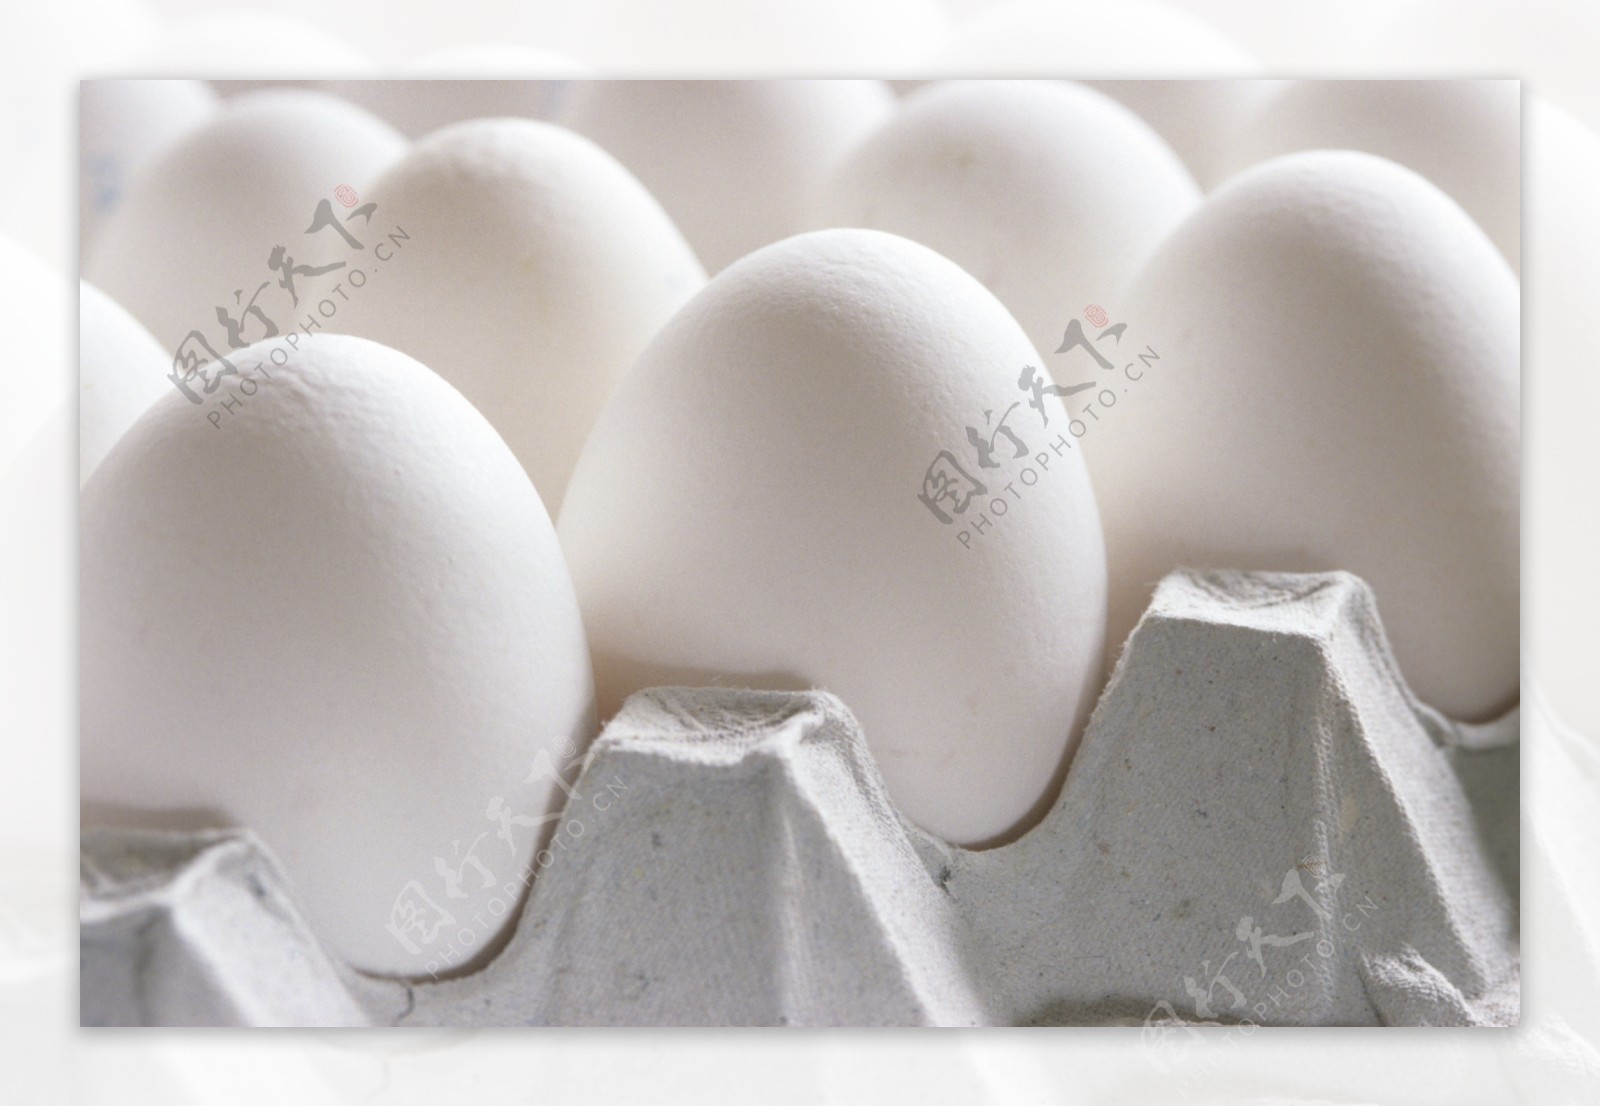 鸡蛋蛋类摄影图片